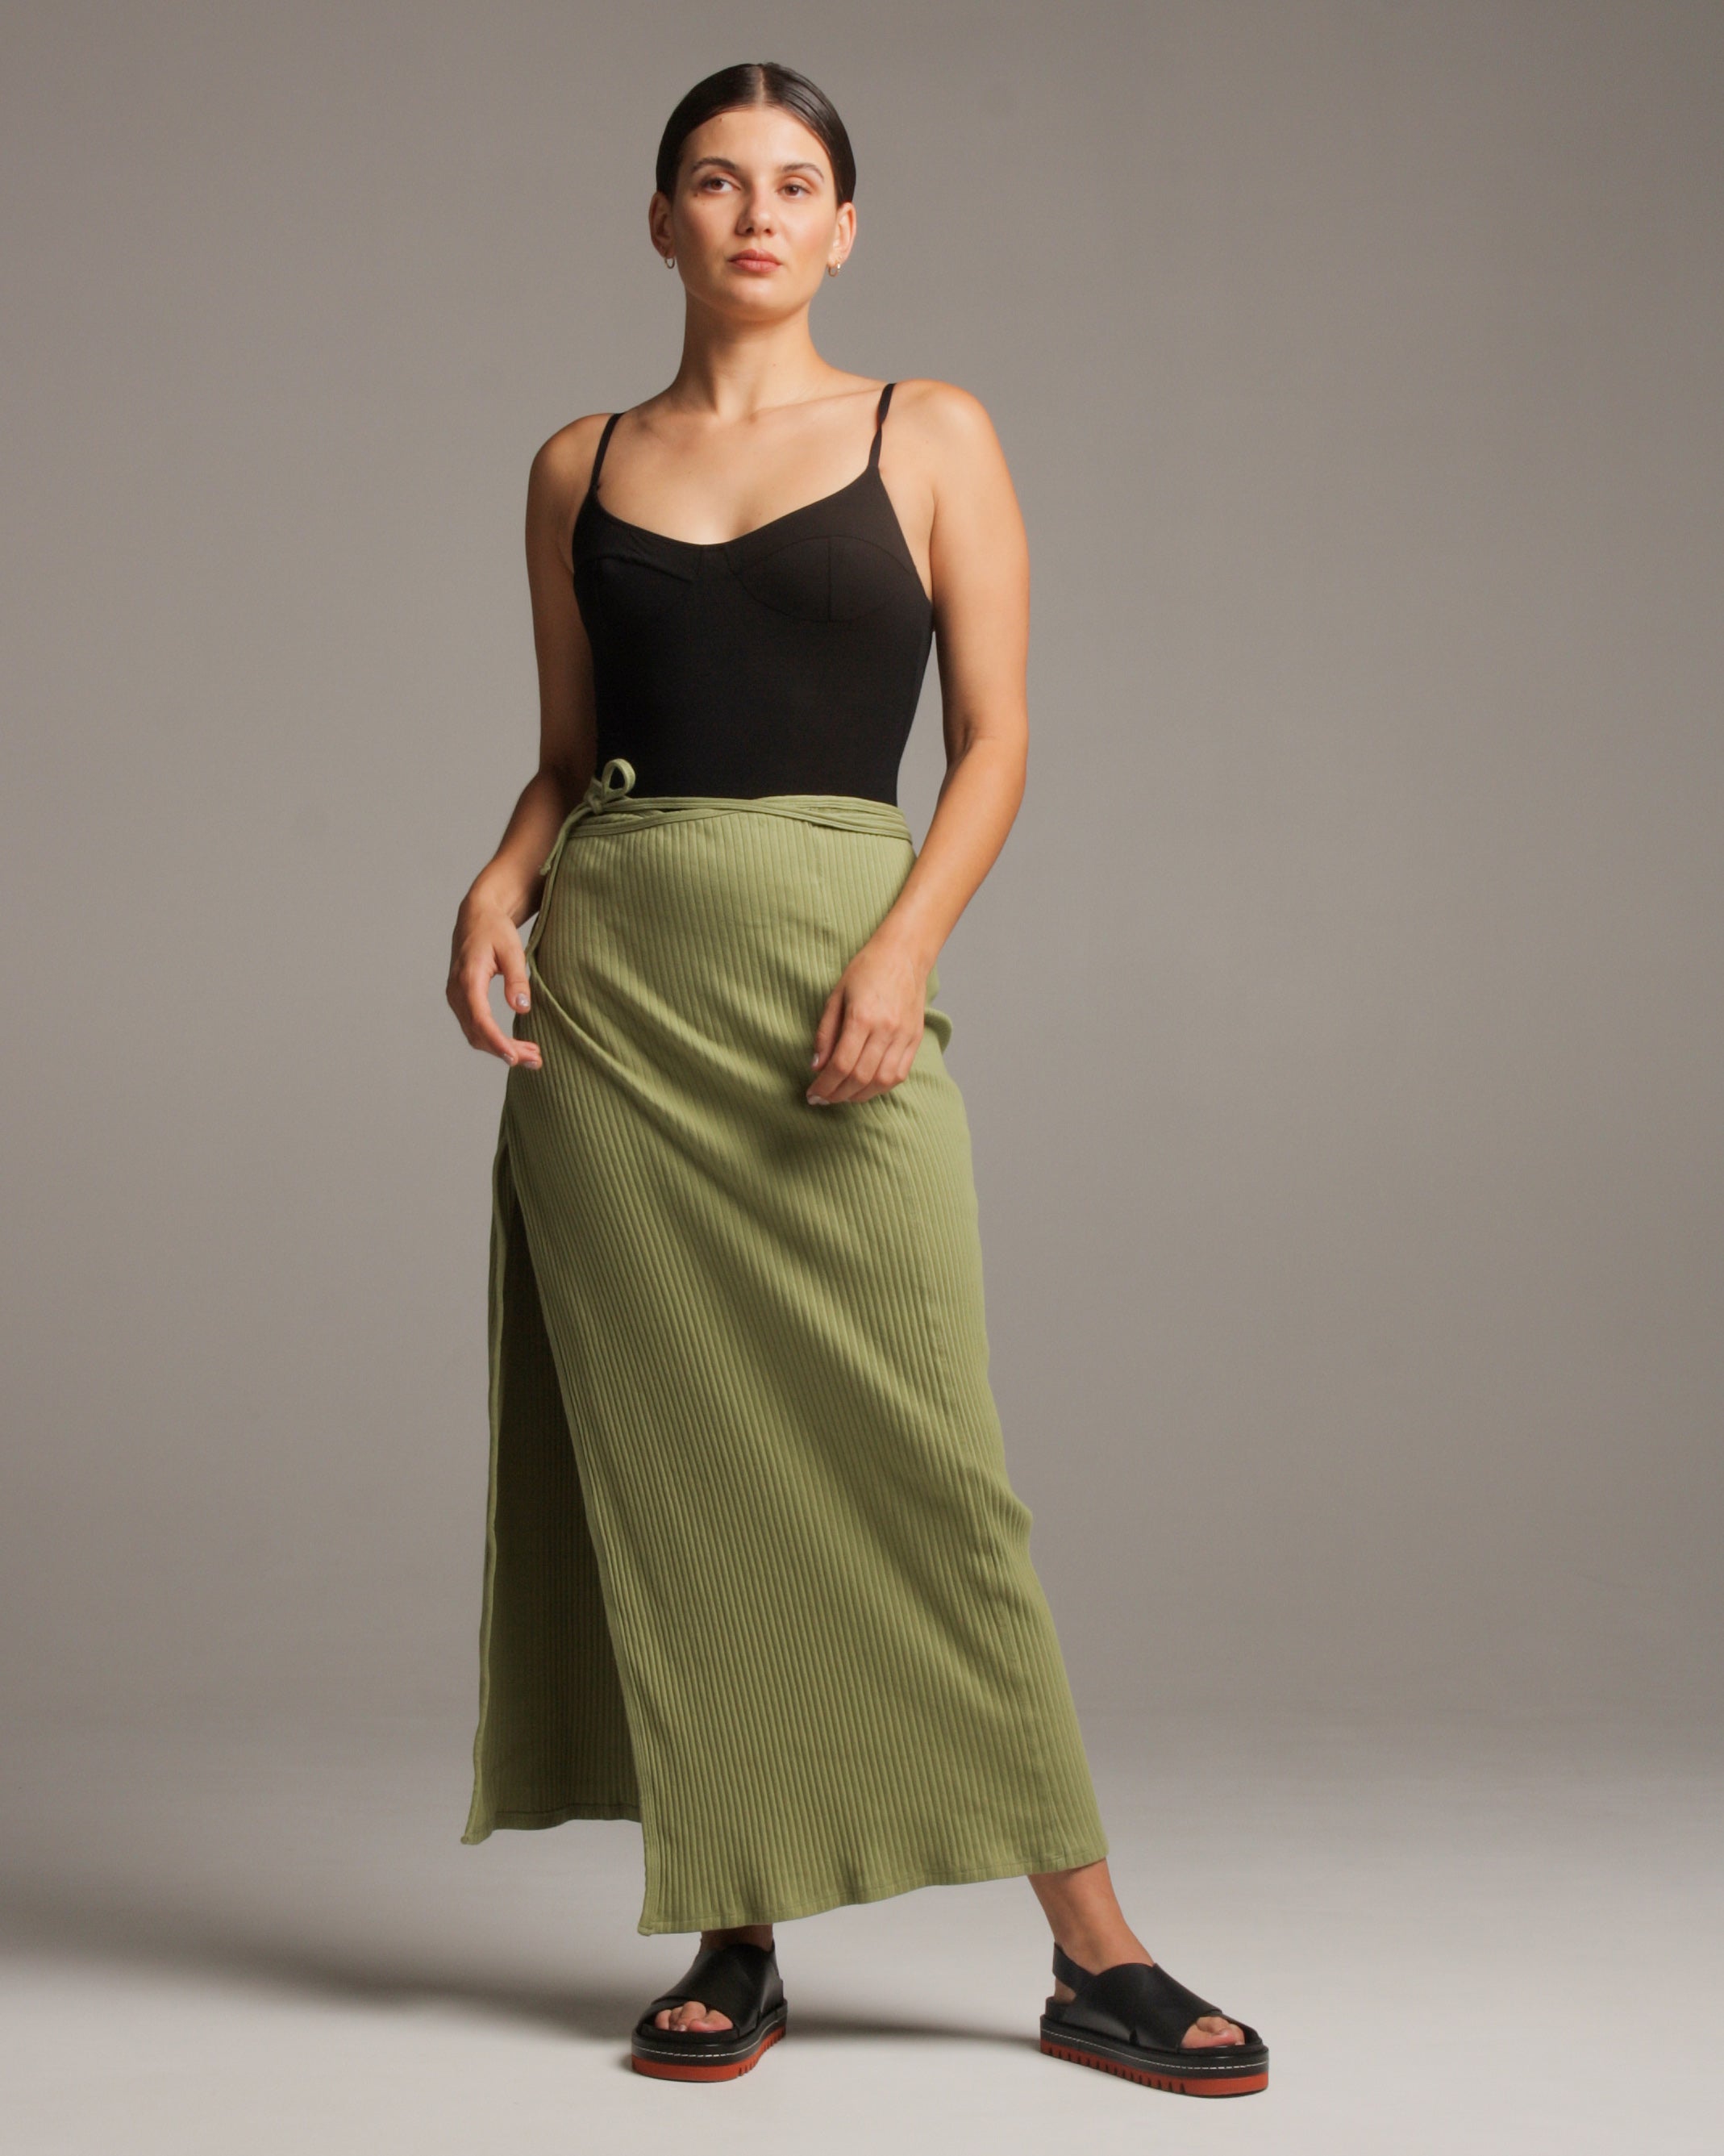 カラーブラックbaserange brig skirt Mサイズ